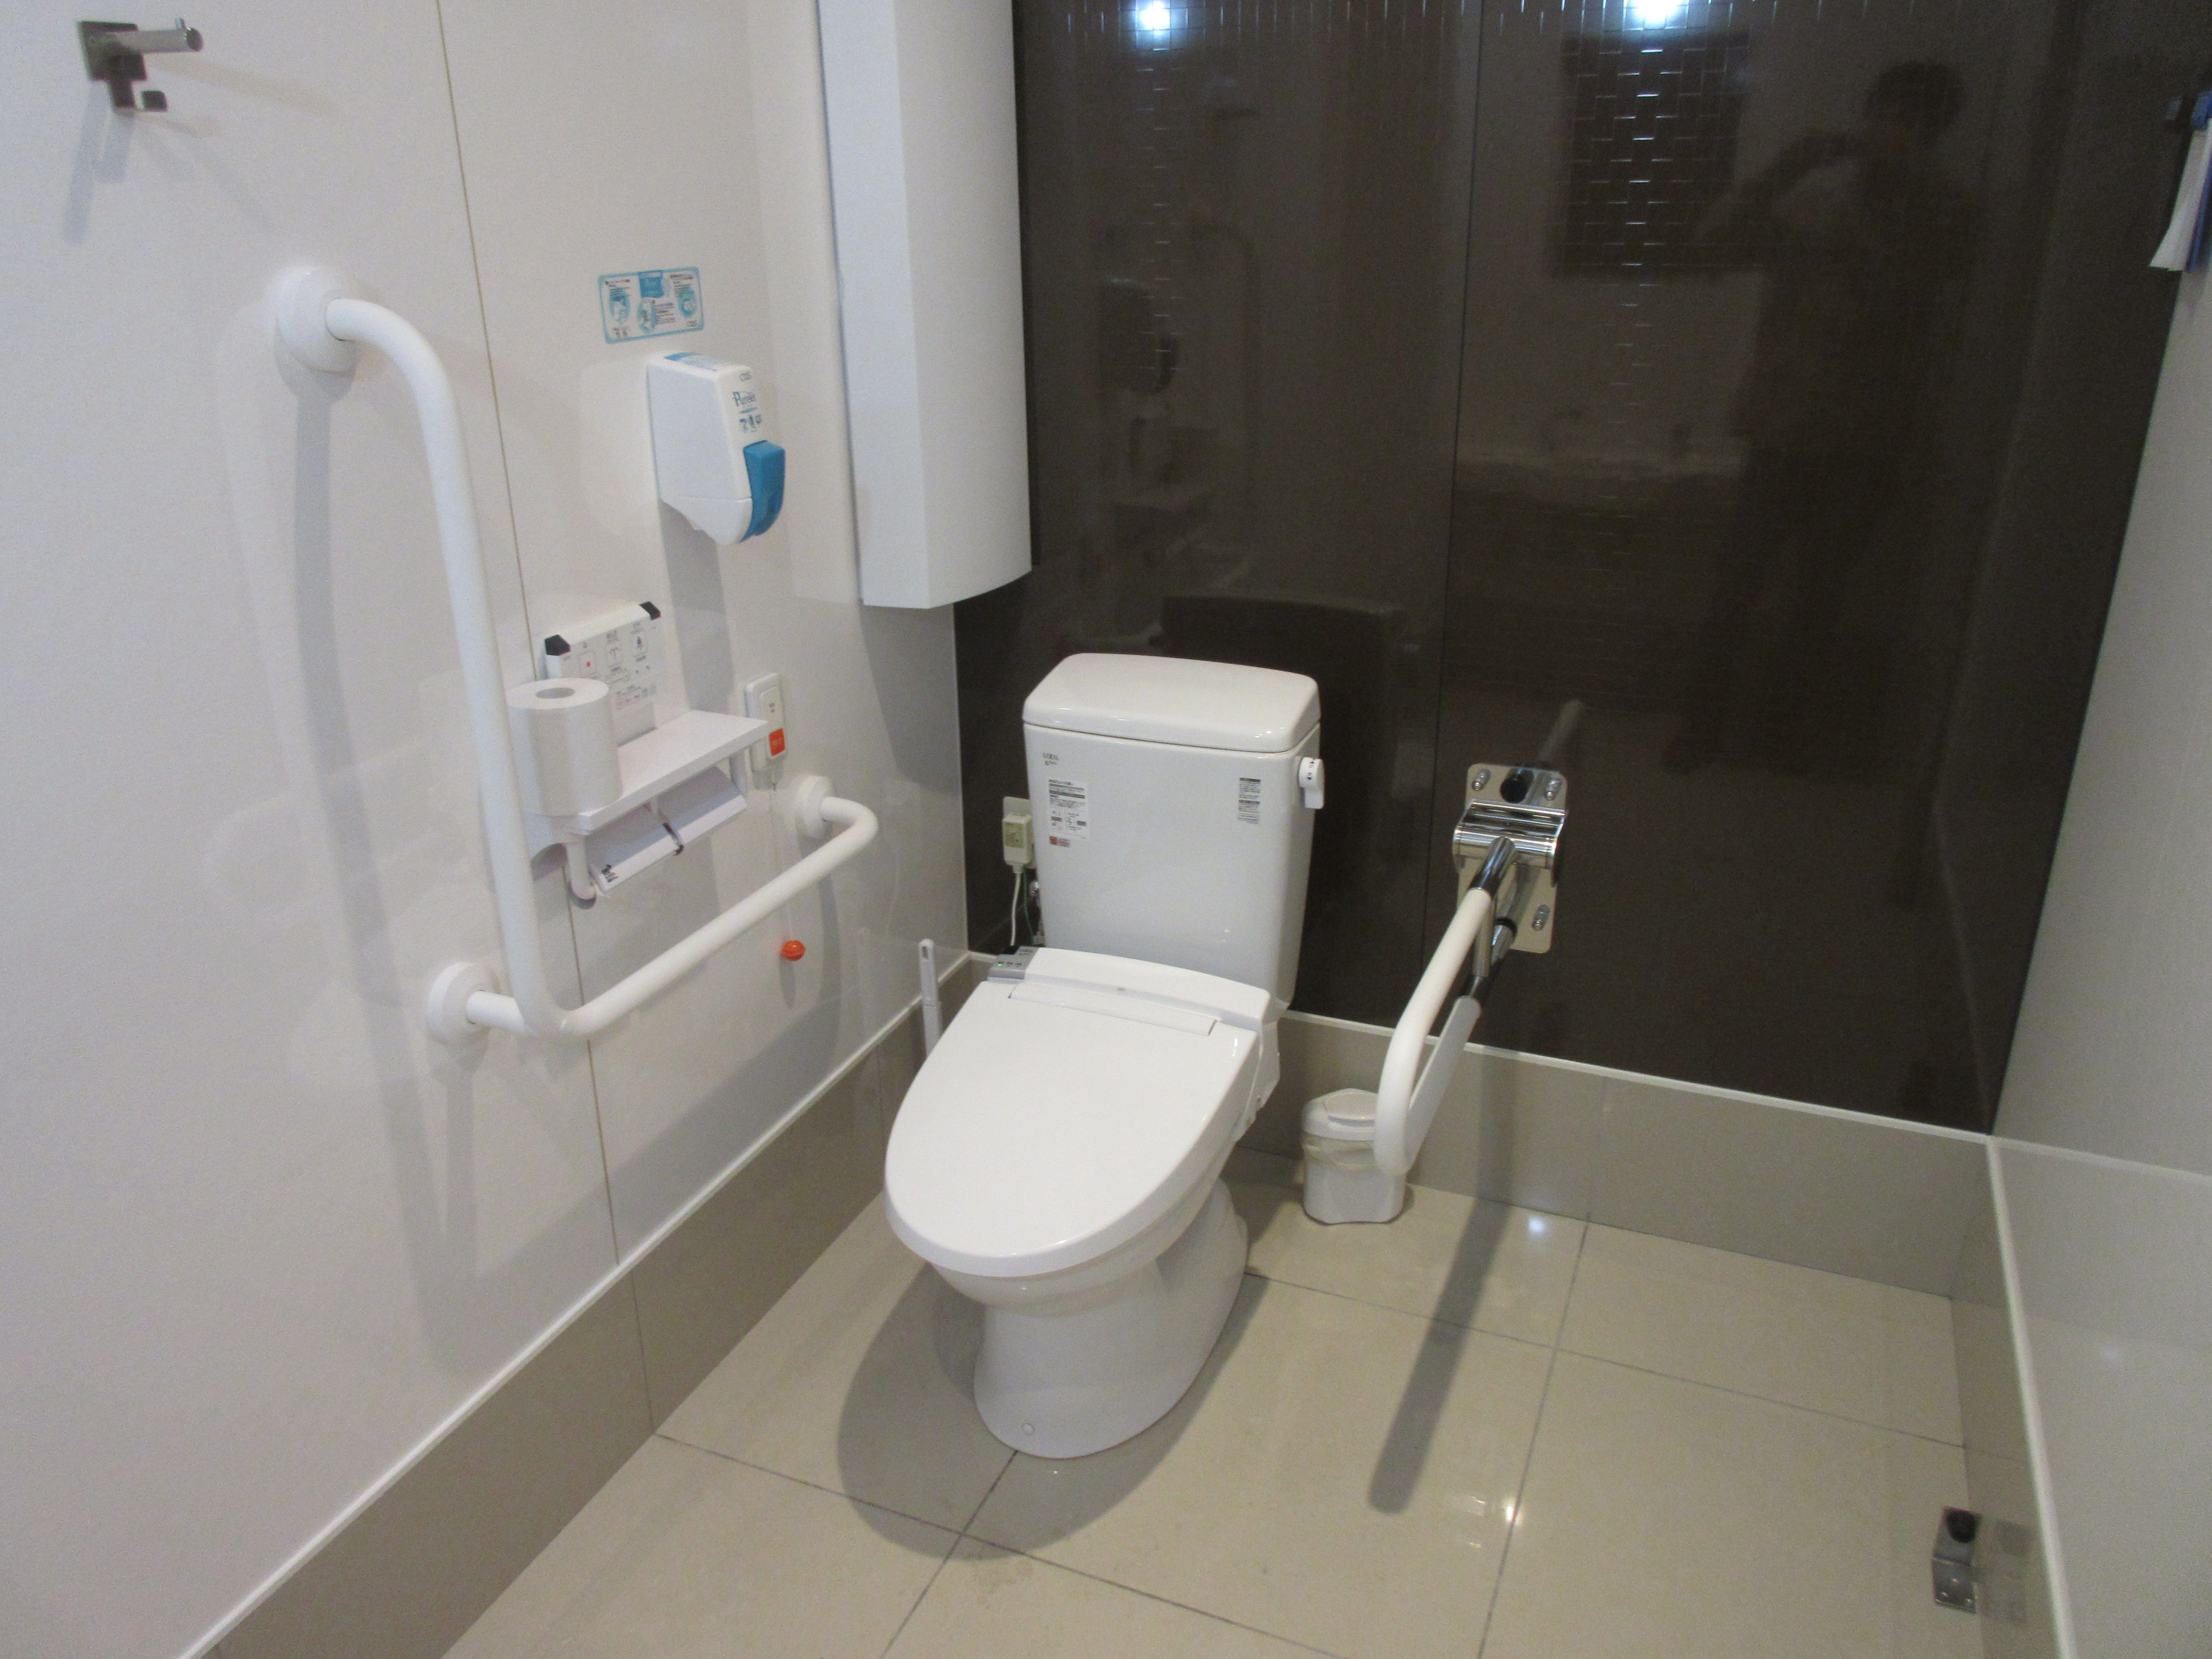 トイレ設備調査日記atosatu ファミリーマート札幌北7条西6丁目店。